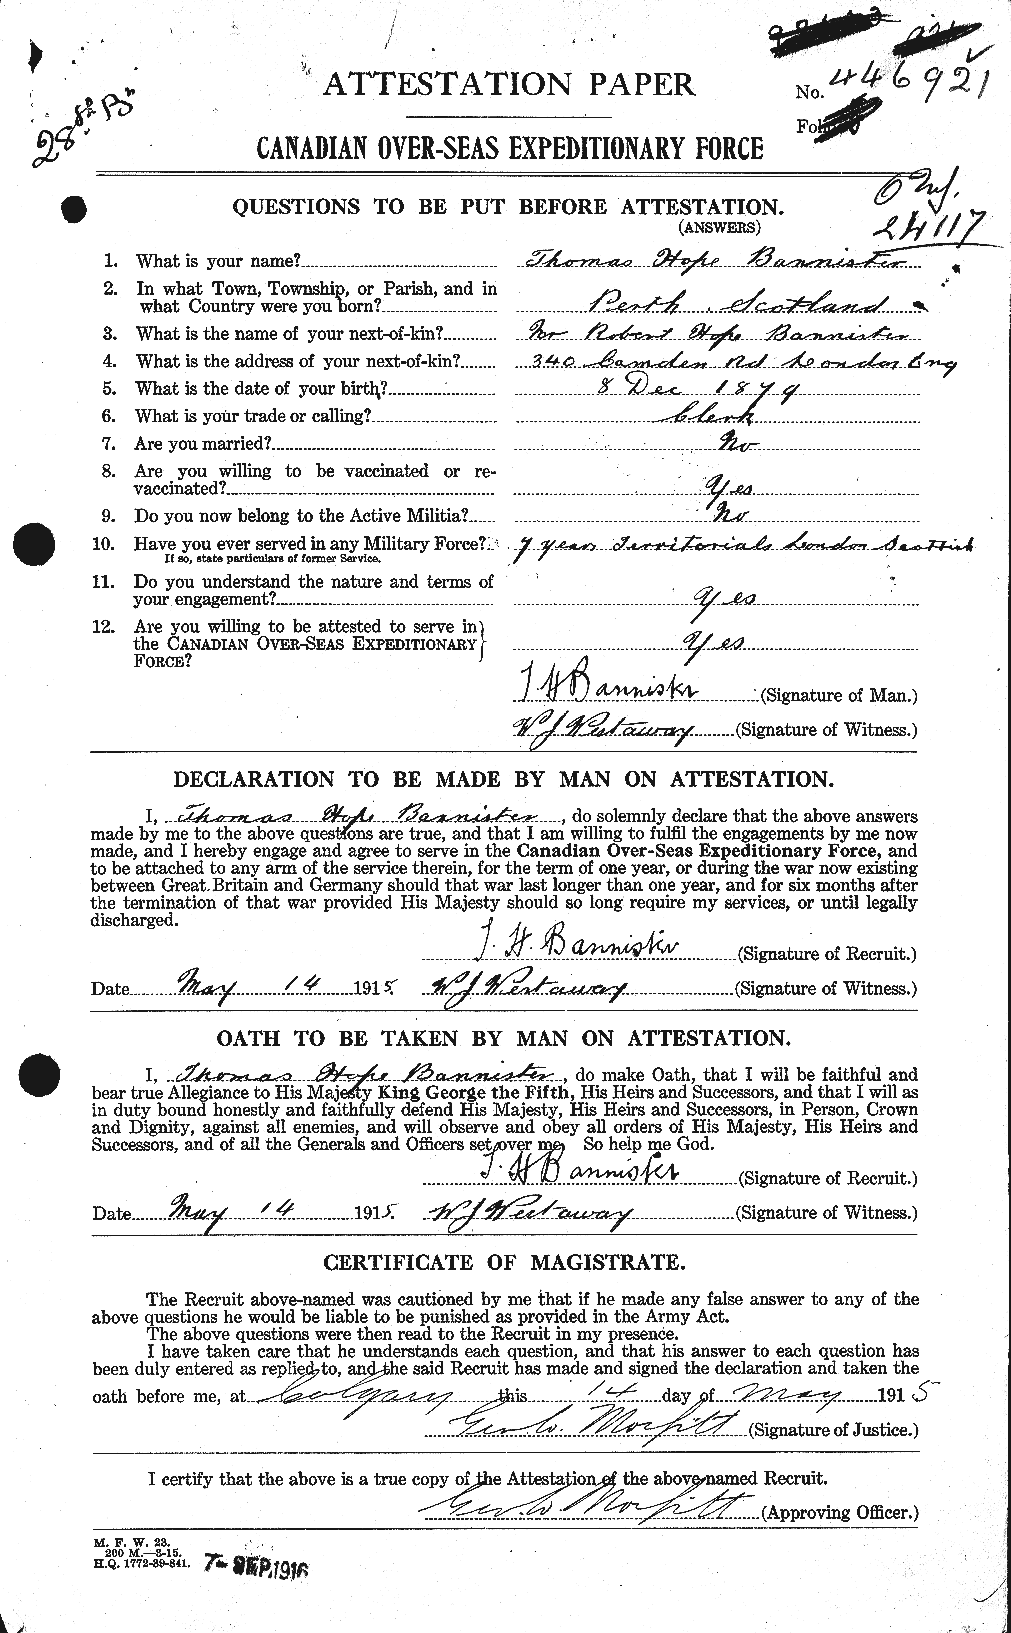 Dossiers du Personnel de la Première Guerre mondiale - CEC 224761a